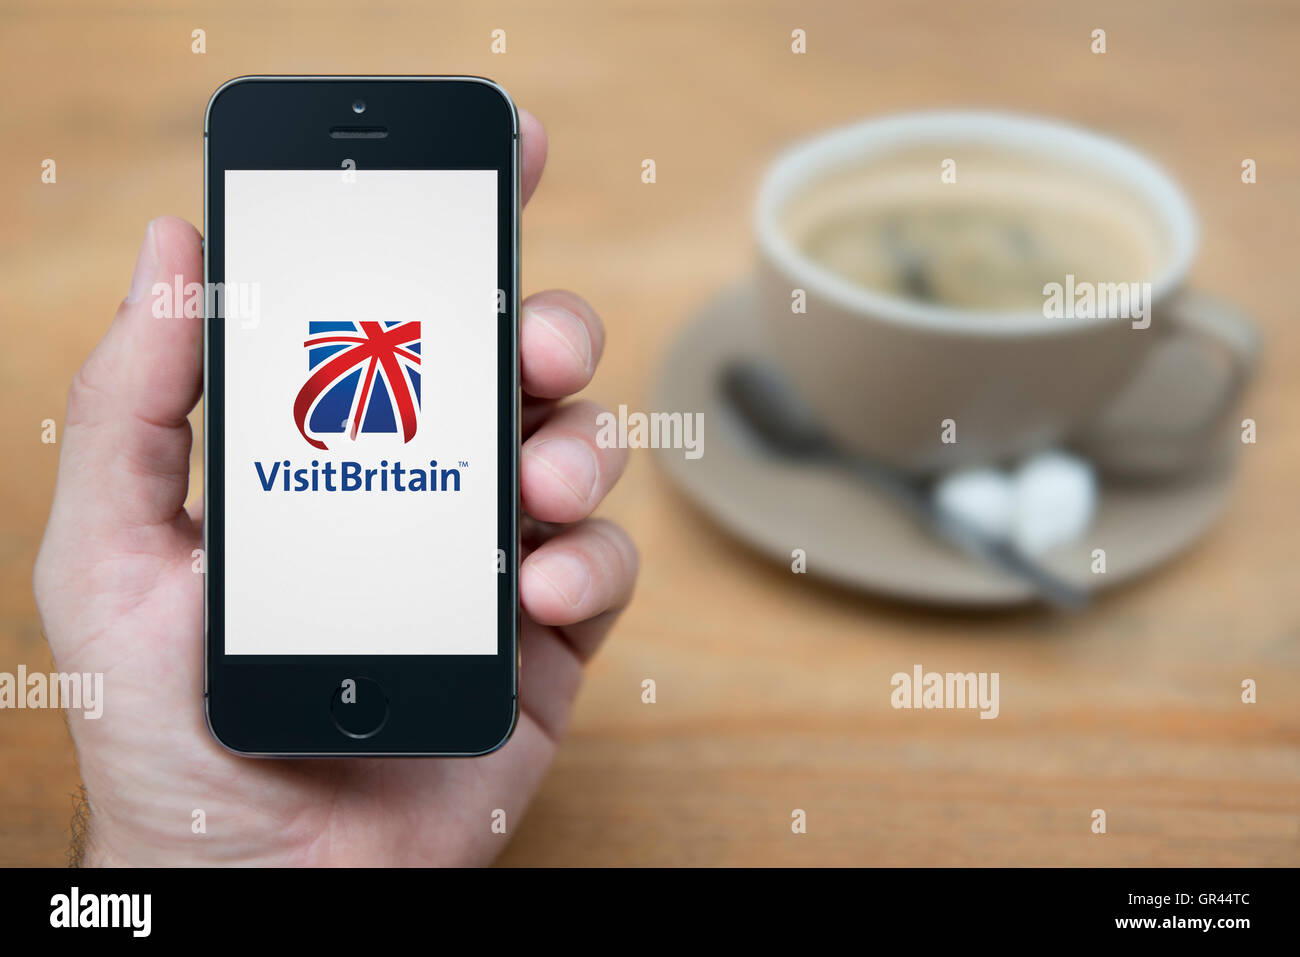 Un hombre mira el iPhone que muestra el logotipo de Visit Britain (uso Editorial solamente). Foto de stock